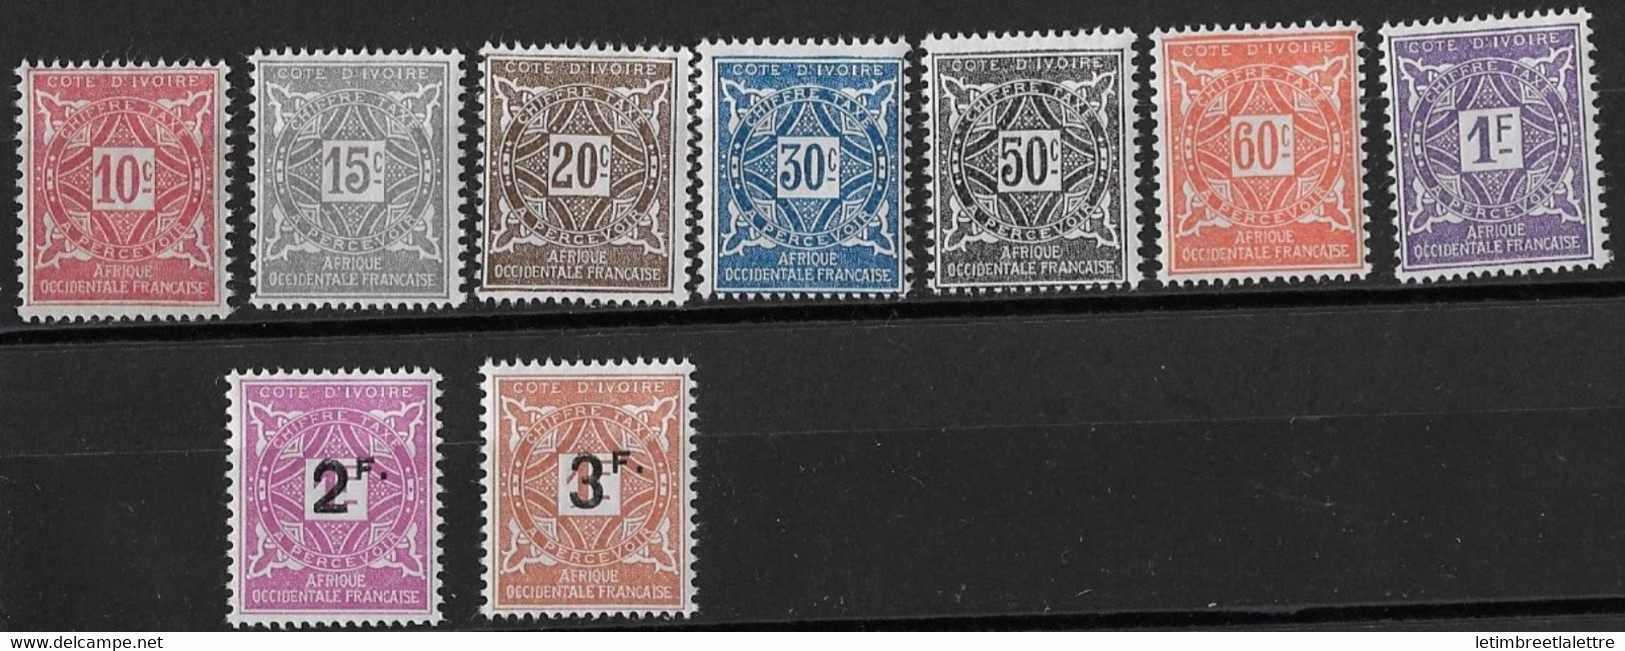 Côte D'Ivoire - Taxe - YT N° 10 à 16 ** - Neuf Sans Charnière - 1915 - Unused Stamps